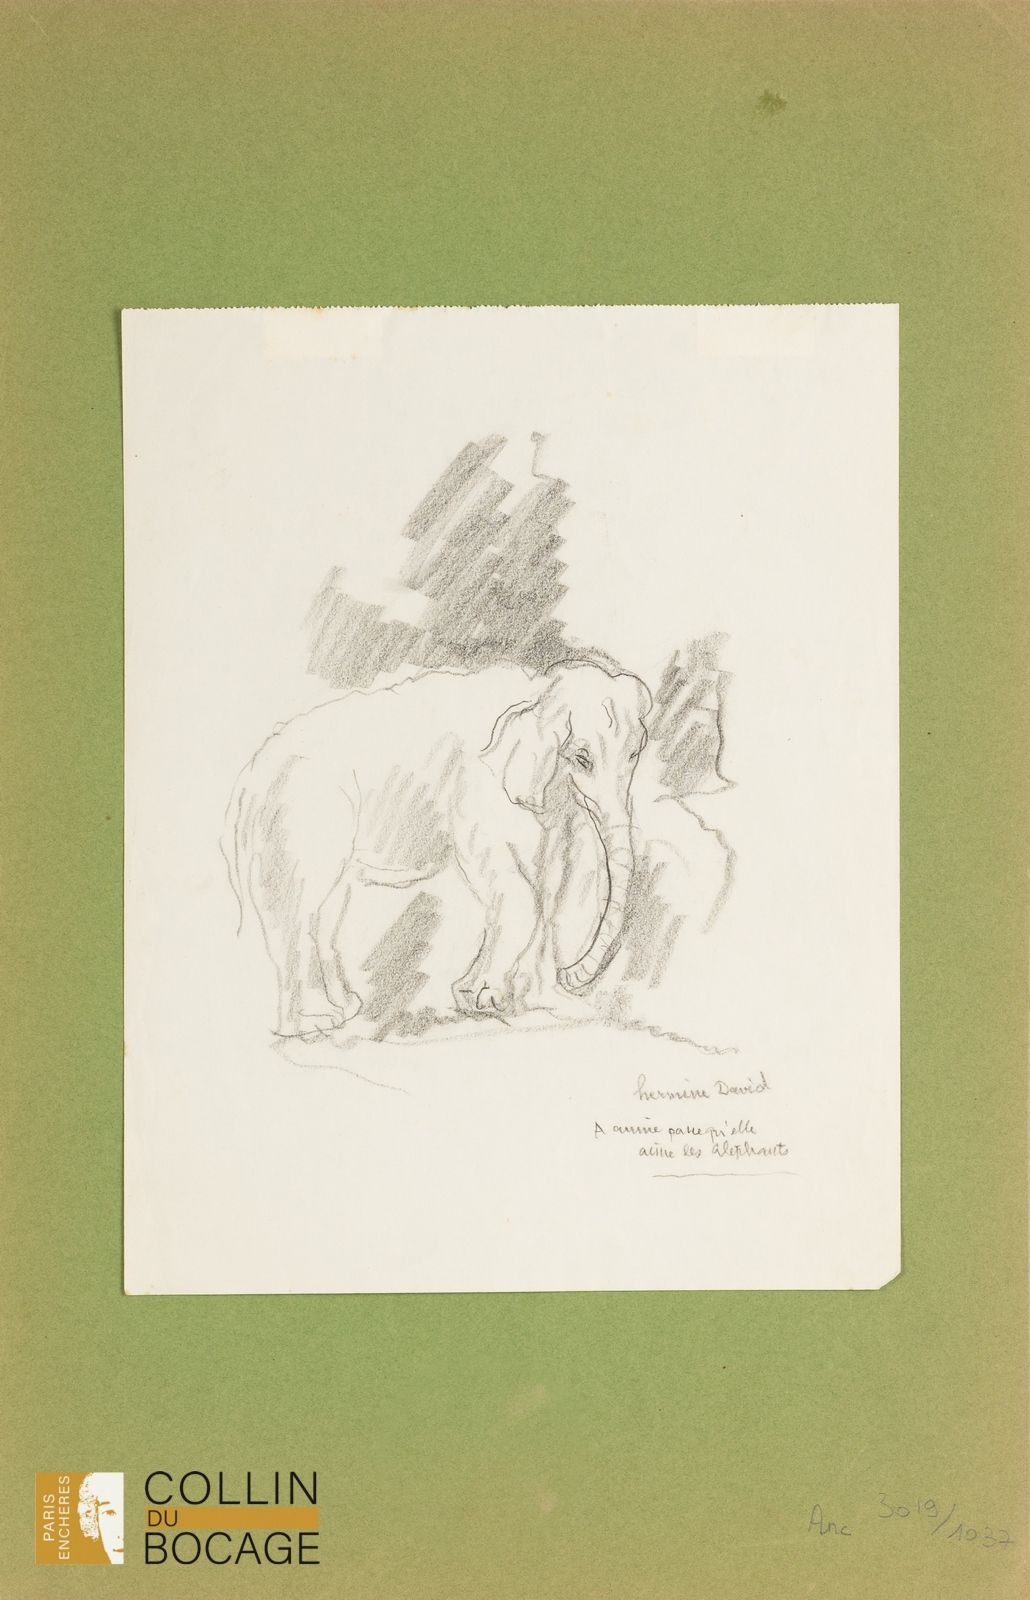 Null 赫米娜-戴维（1900-1970）
大象 木炭画
签名右下方，献给 "安妮，因为她喜欢大象"。
30 x 24 厘米
折叠